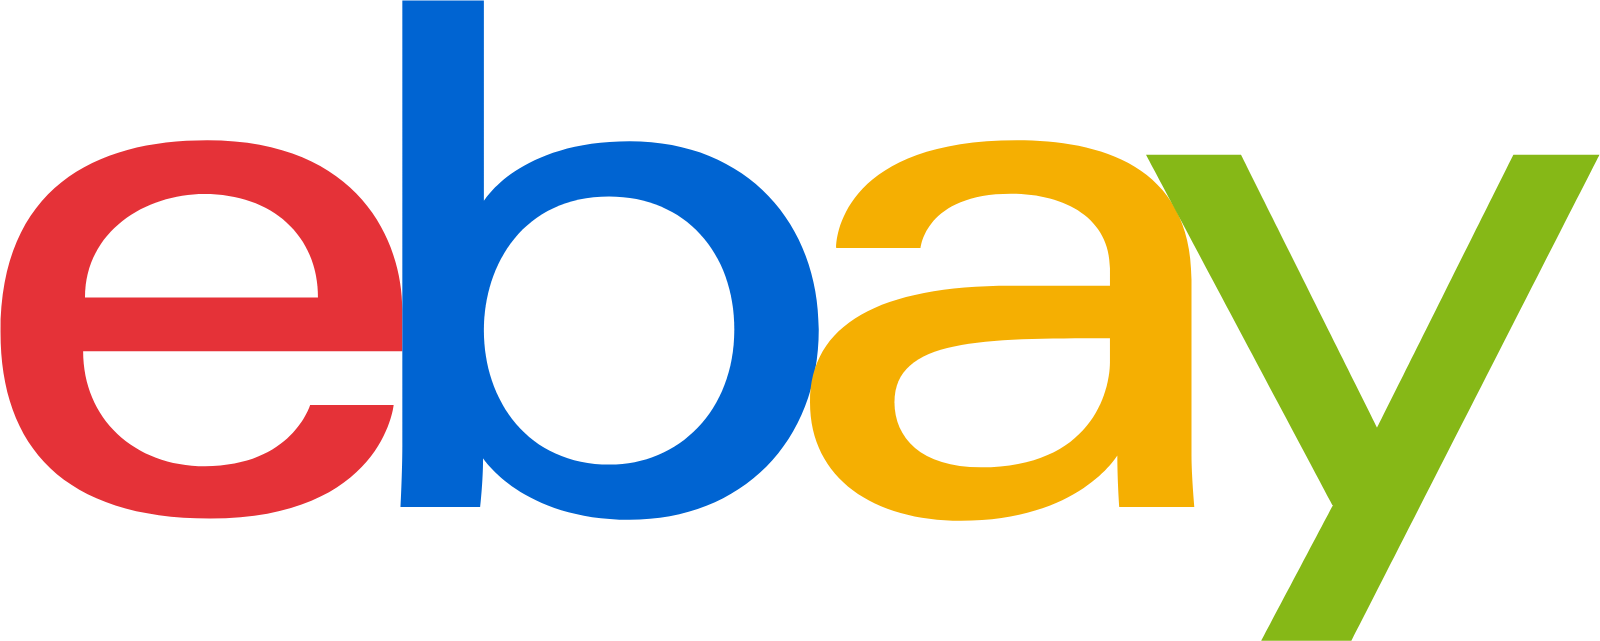 eBay logo (transparent PNG)